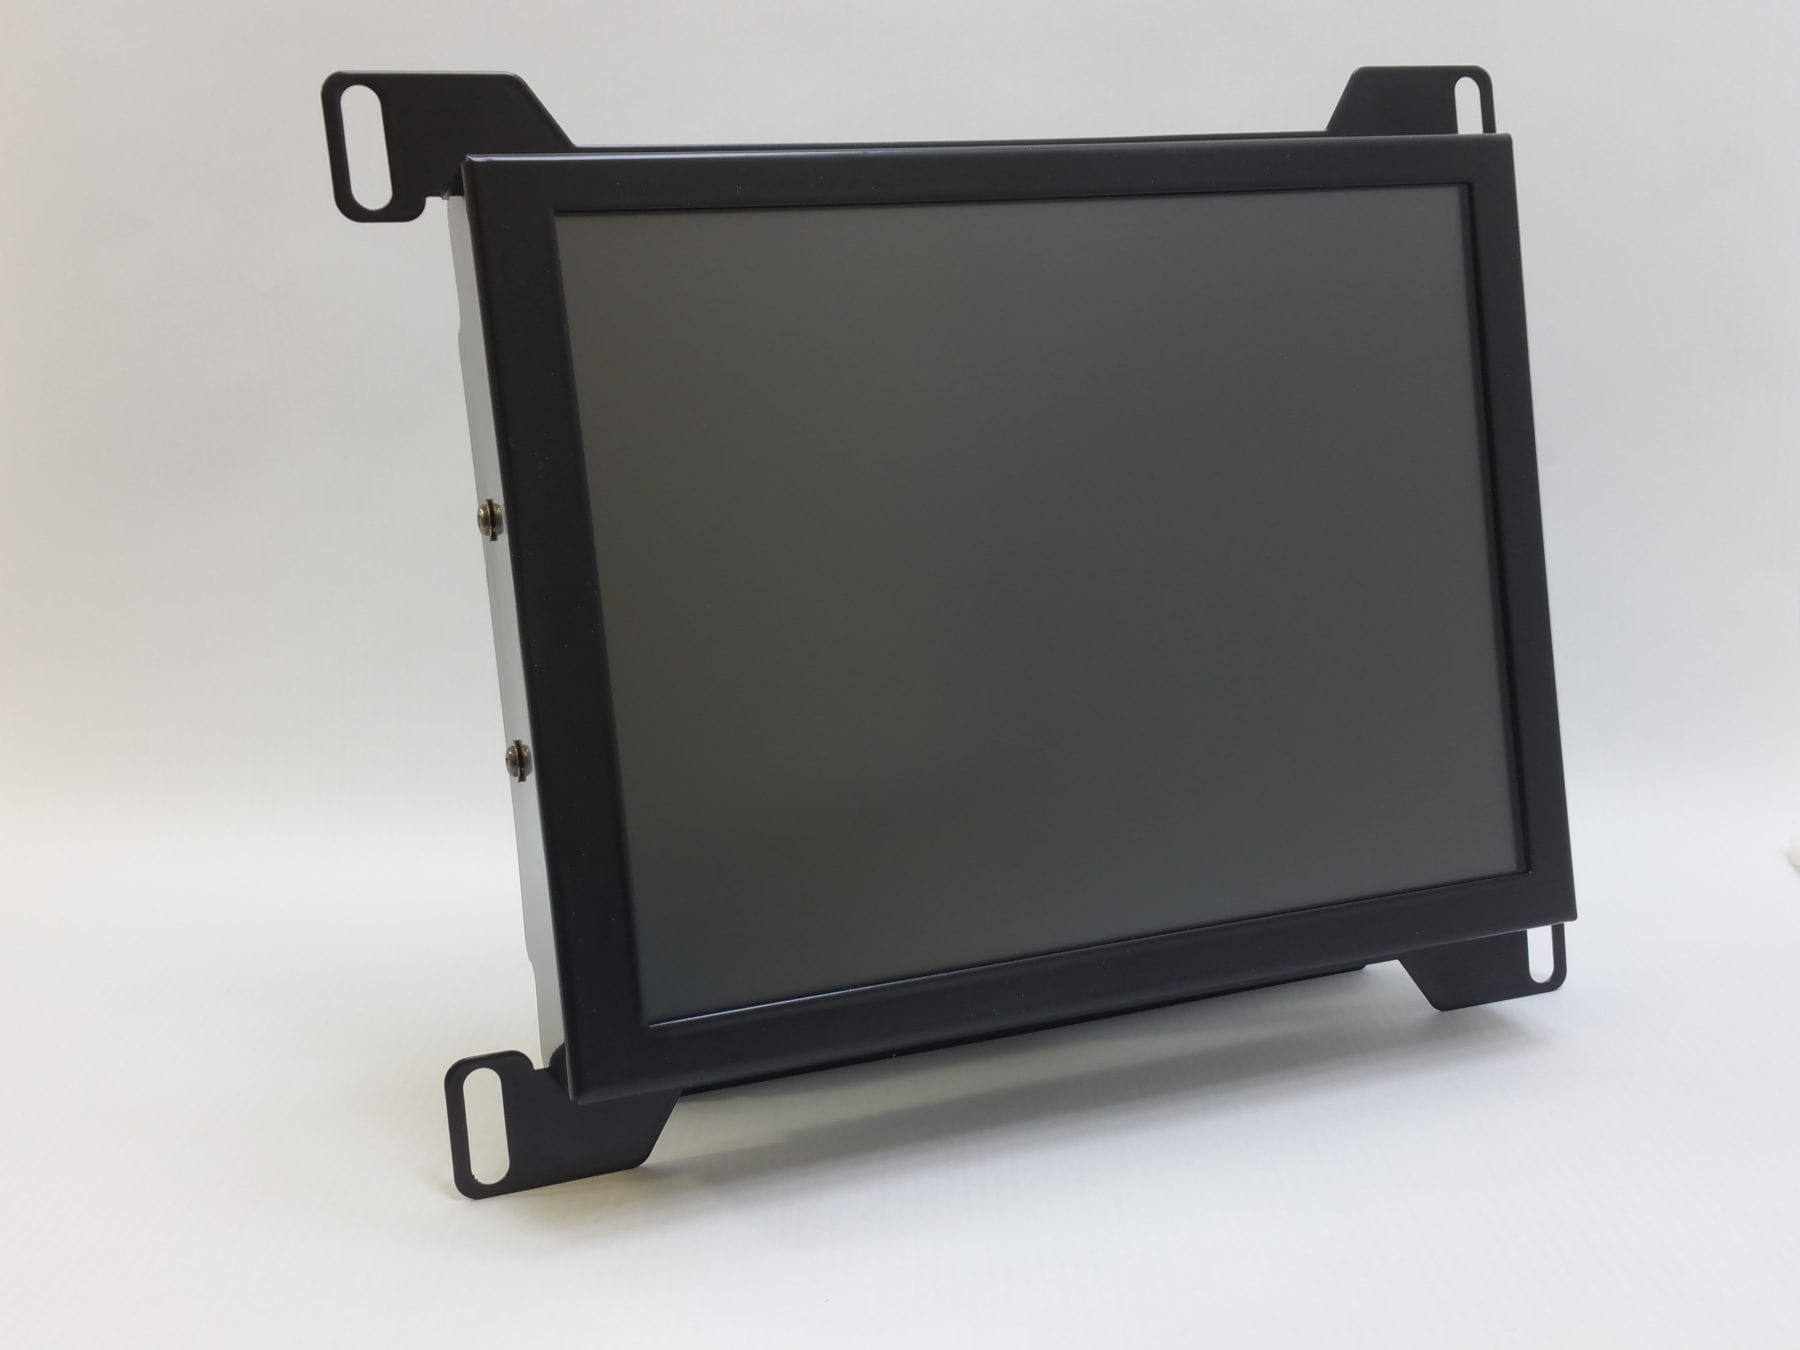 LED Backlight kit for Sharp LQ121S1DG41 Industrial LCD Panel